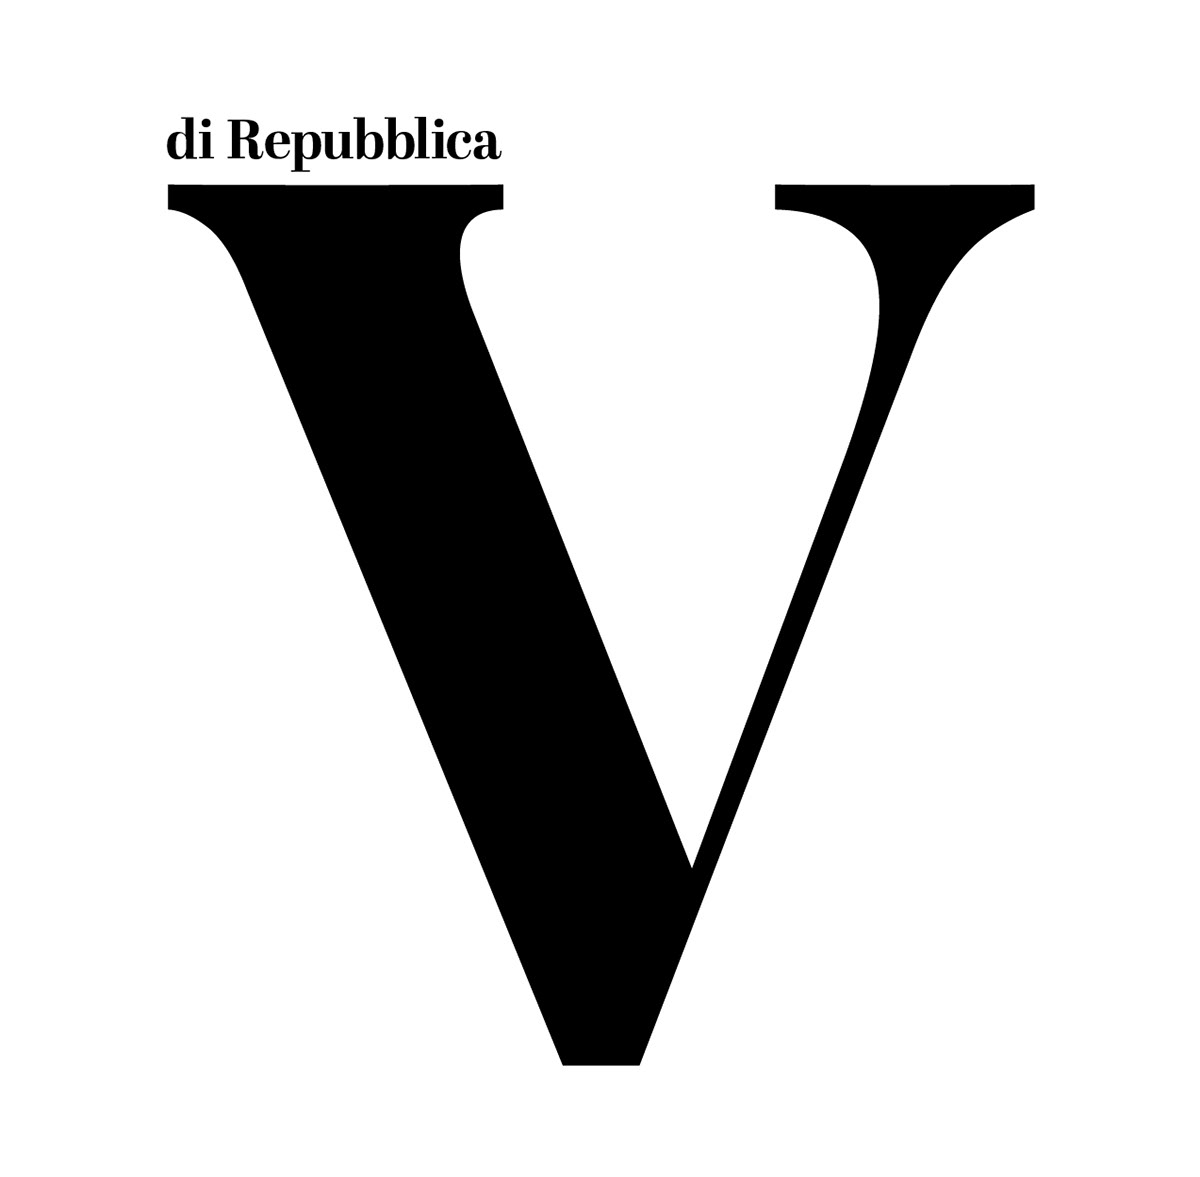 Adobe Portfolio art direction  creative editorial editorial design  La Repubblica magazine newspaper revista Suplemento venerdì di repubblica